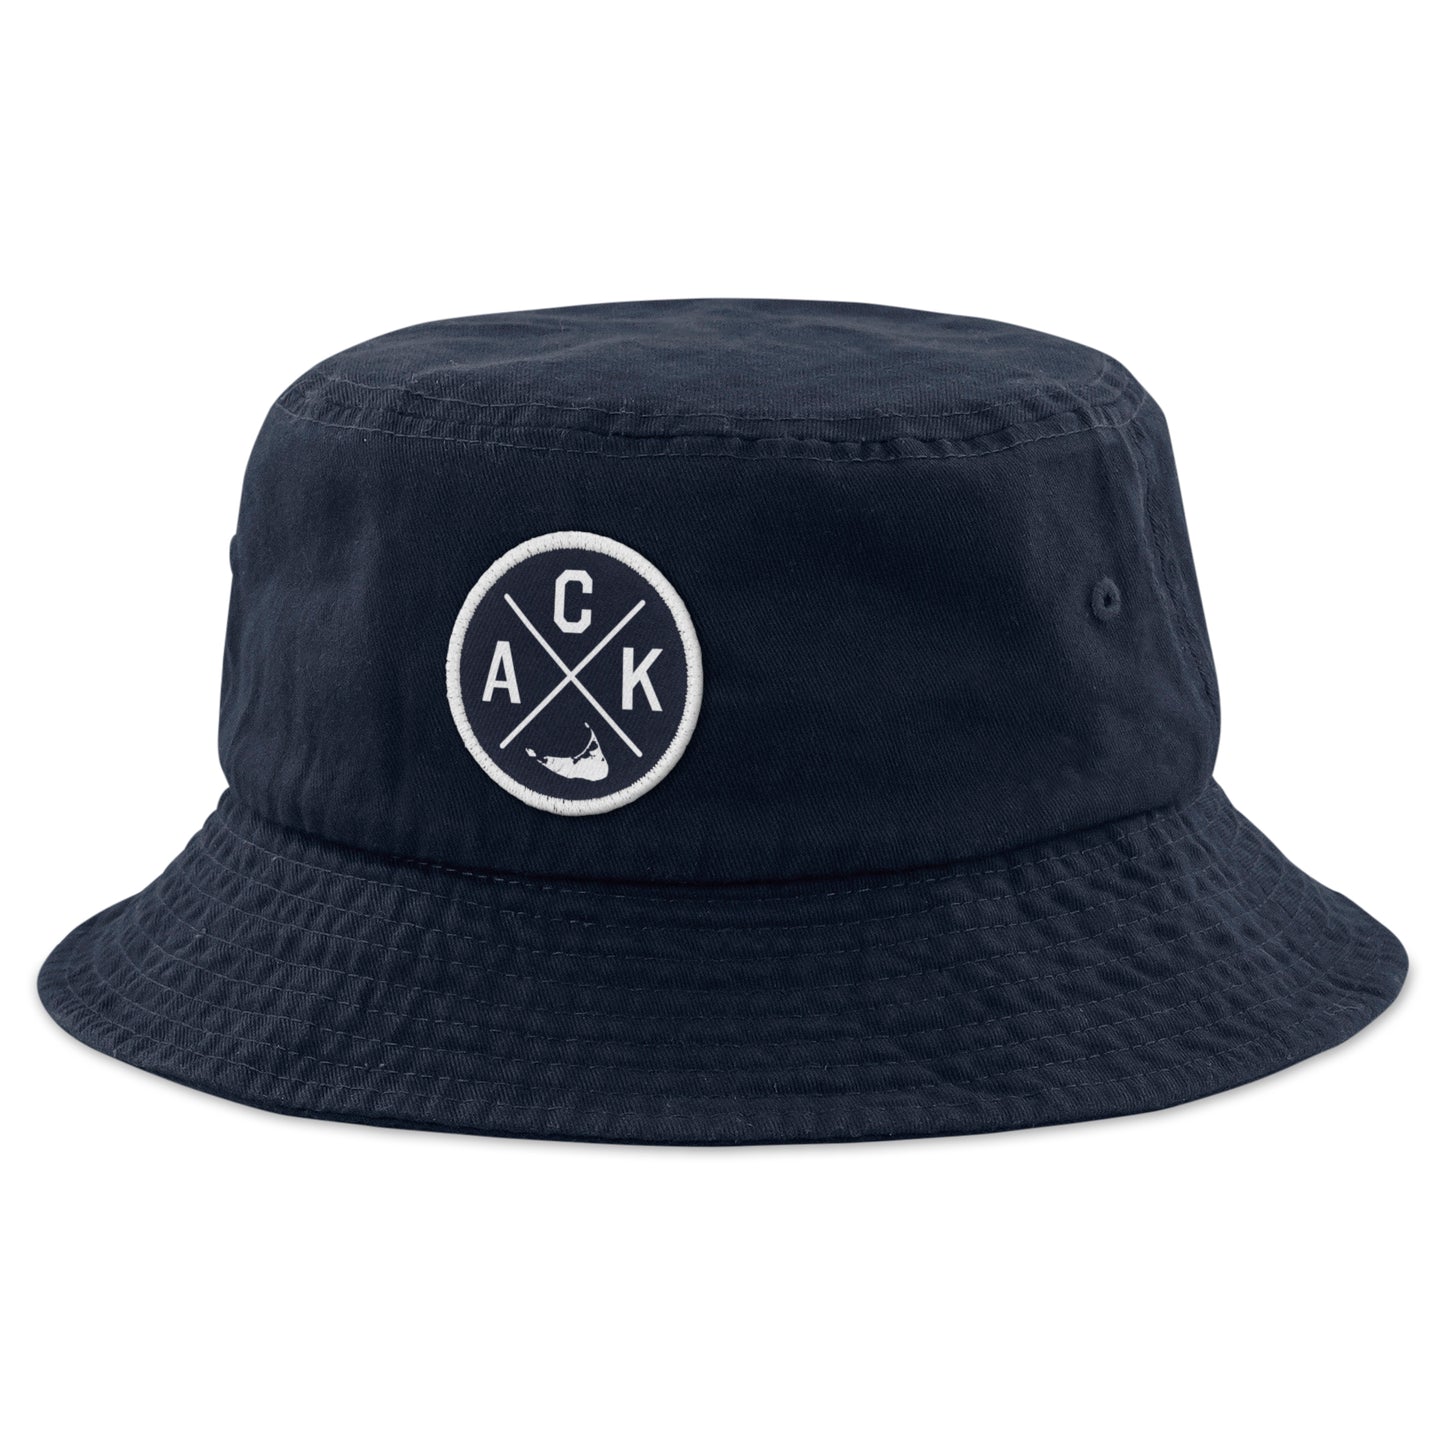 Nantucket ACK Emblem Bucket Hat - Chowdaheadz